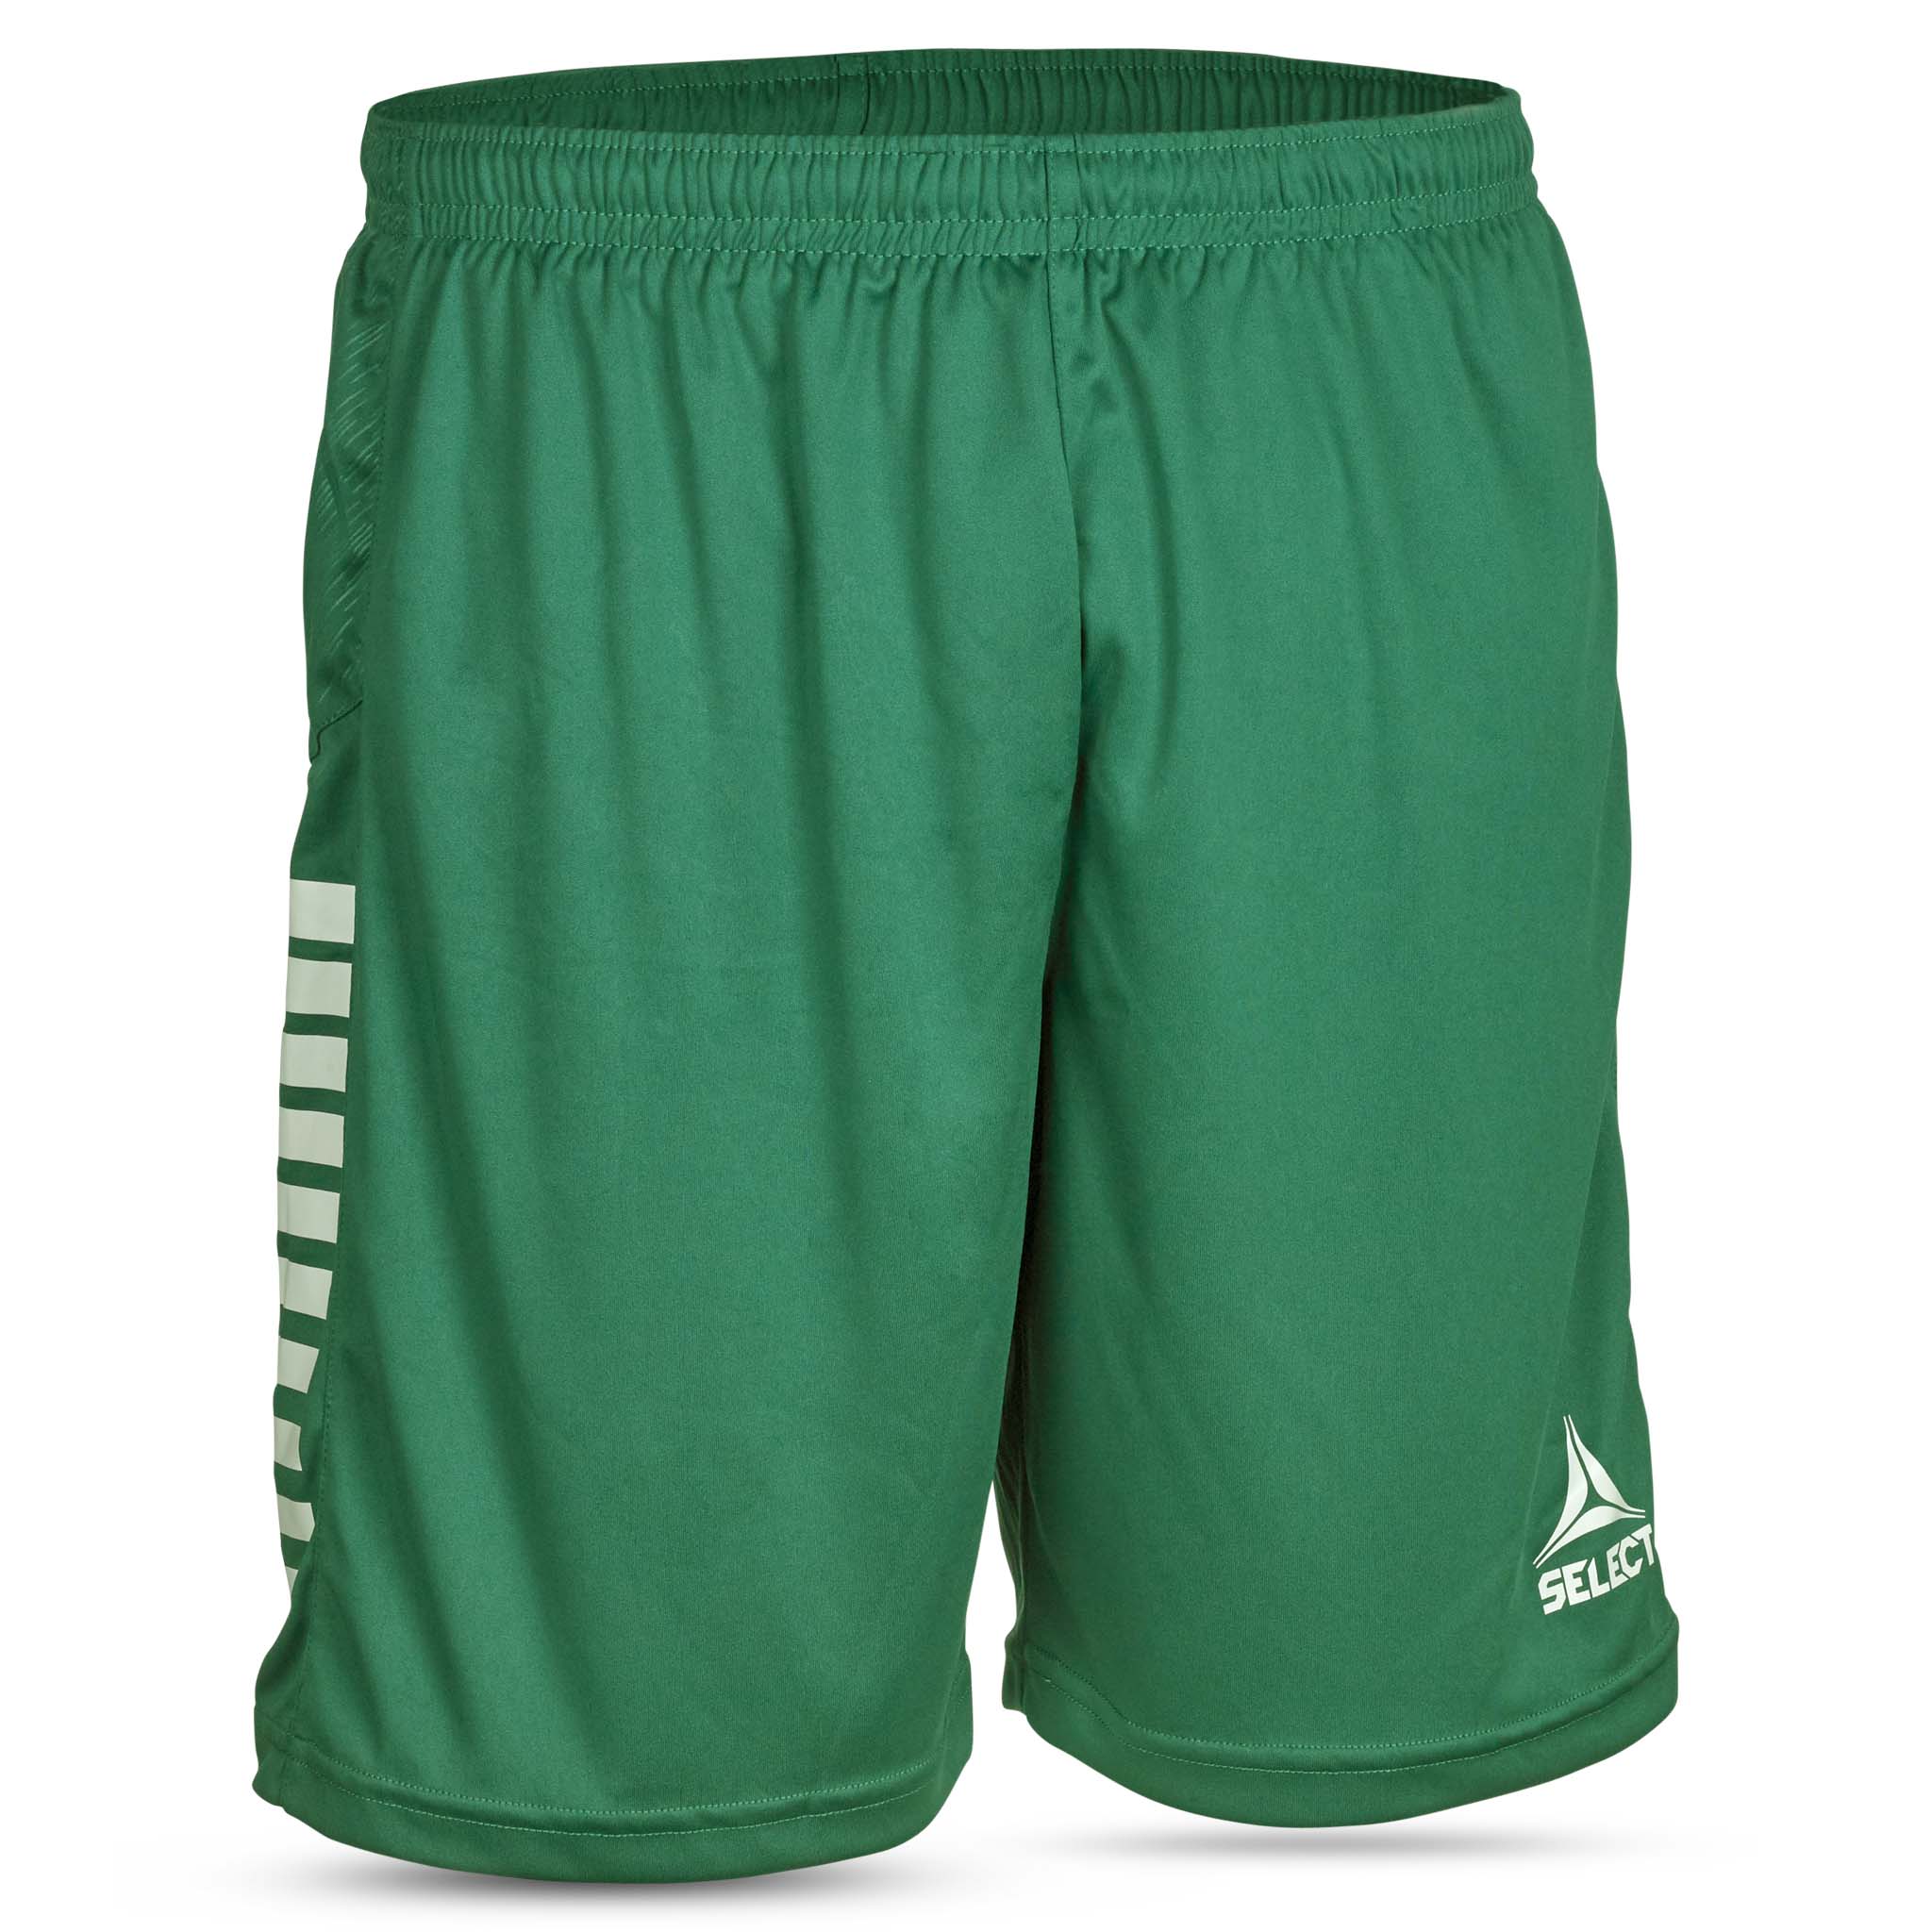 Spain Shorts - Barn #färg_grön